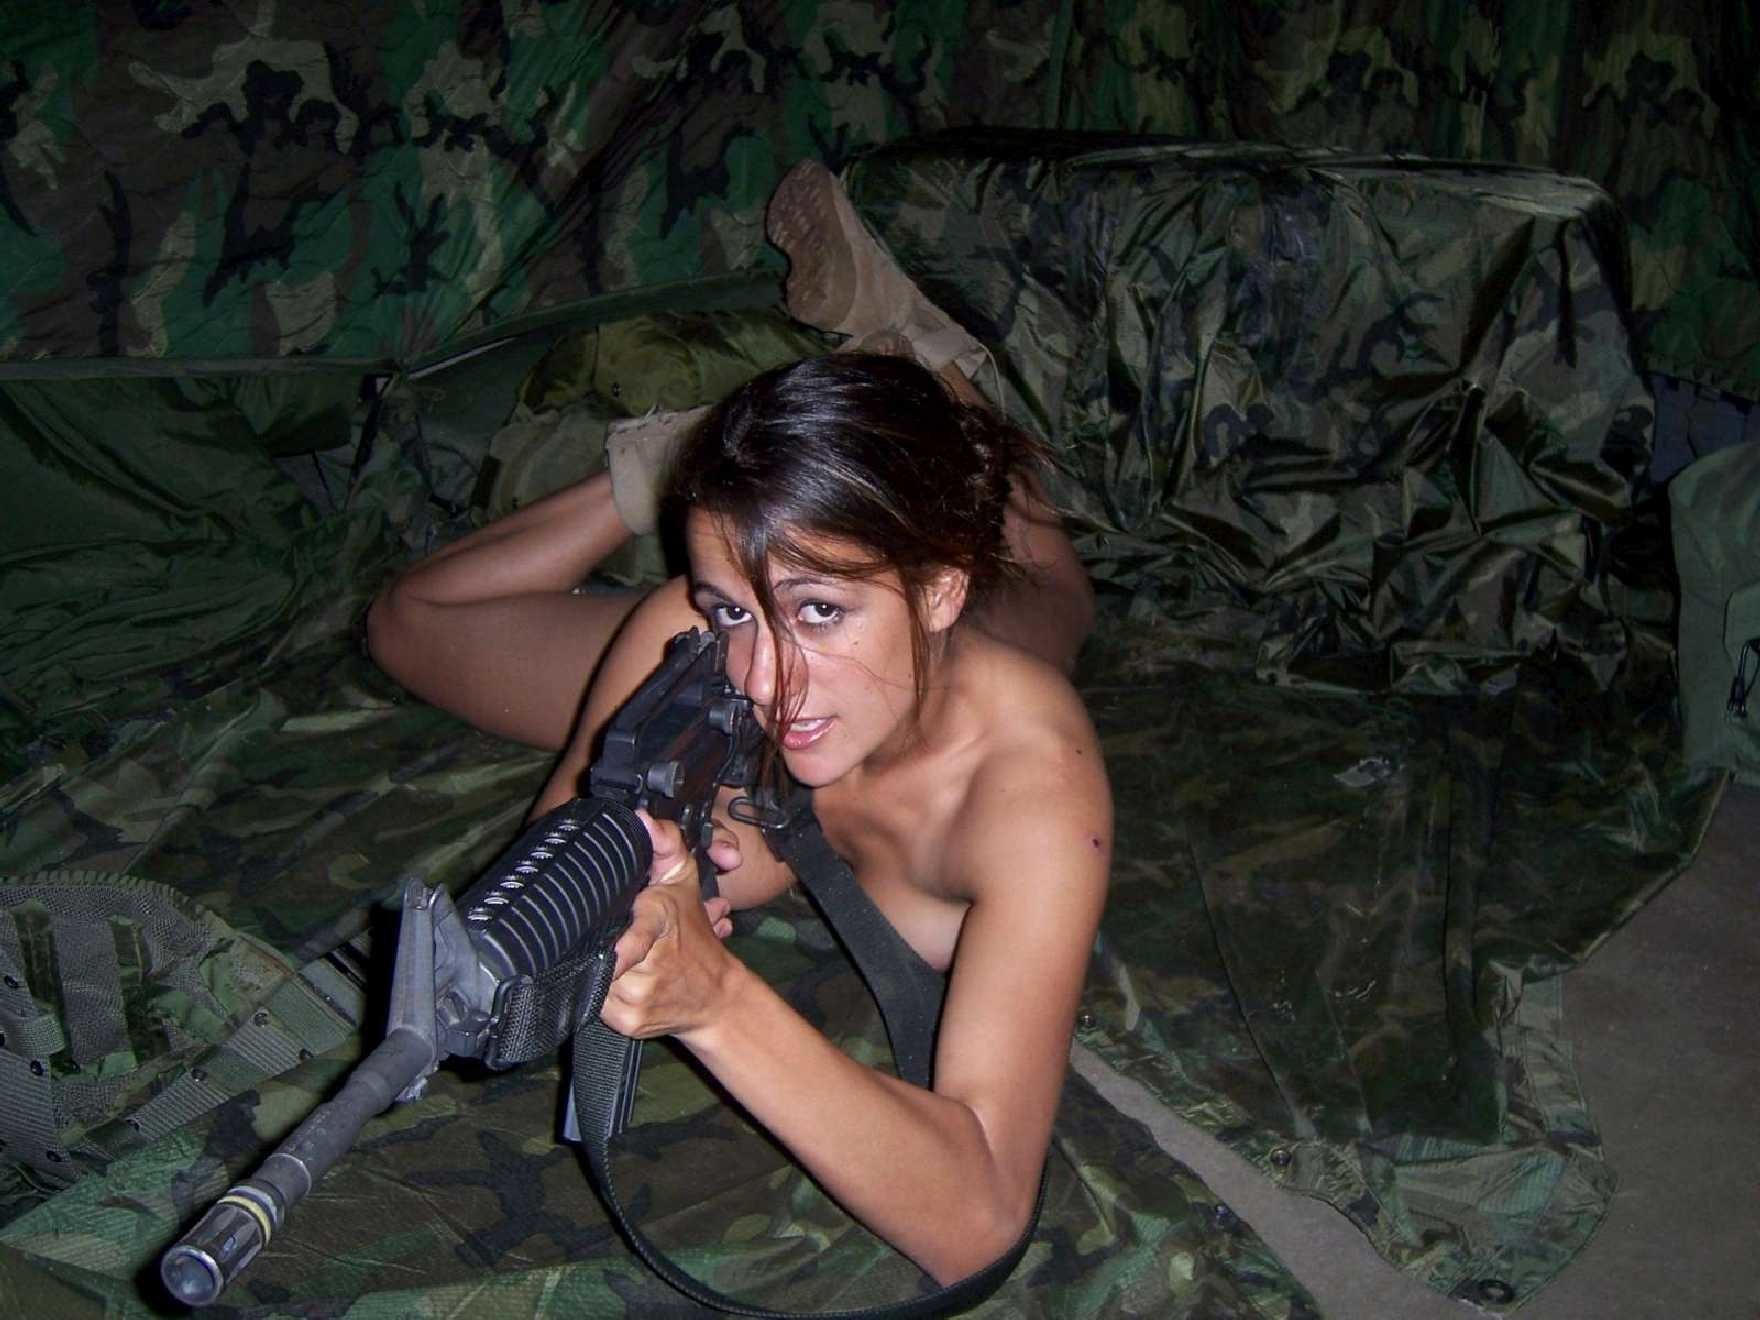 military women